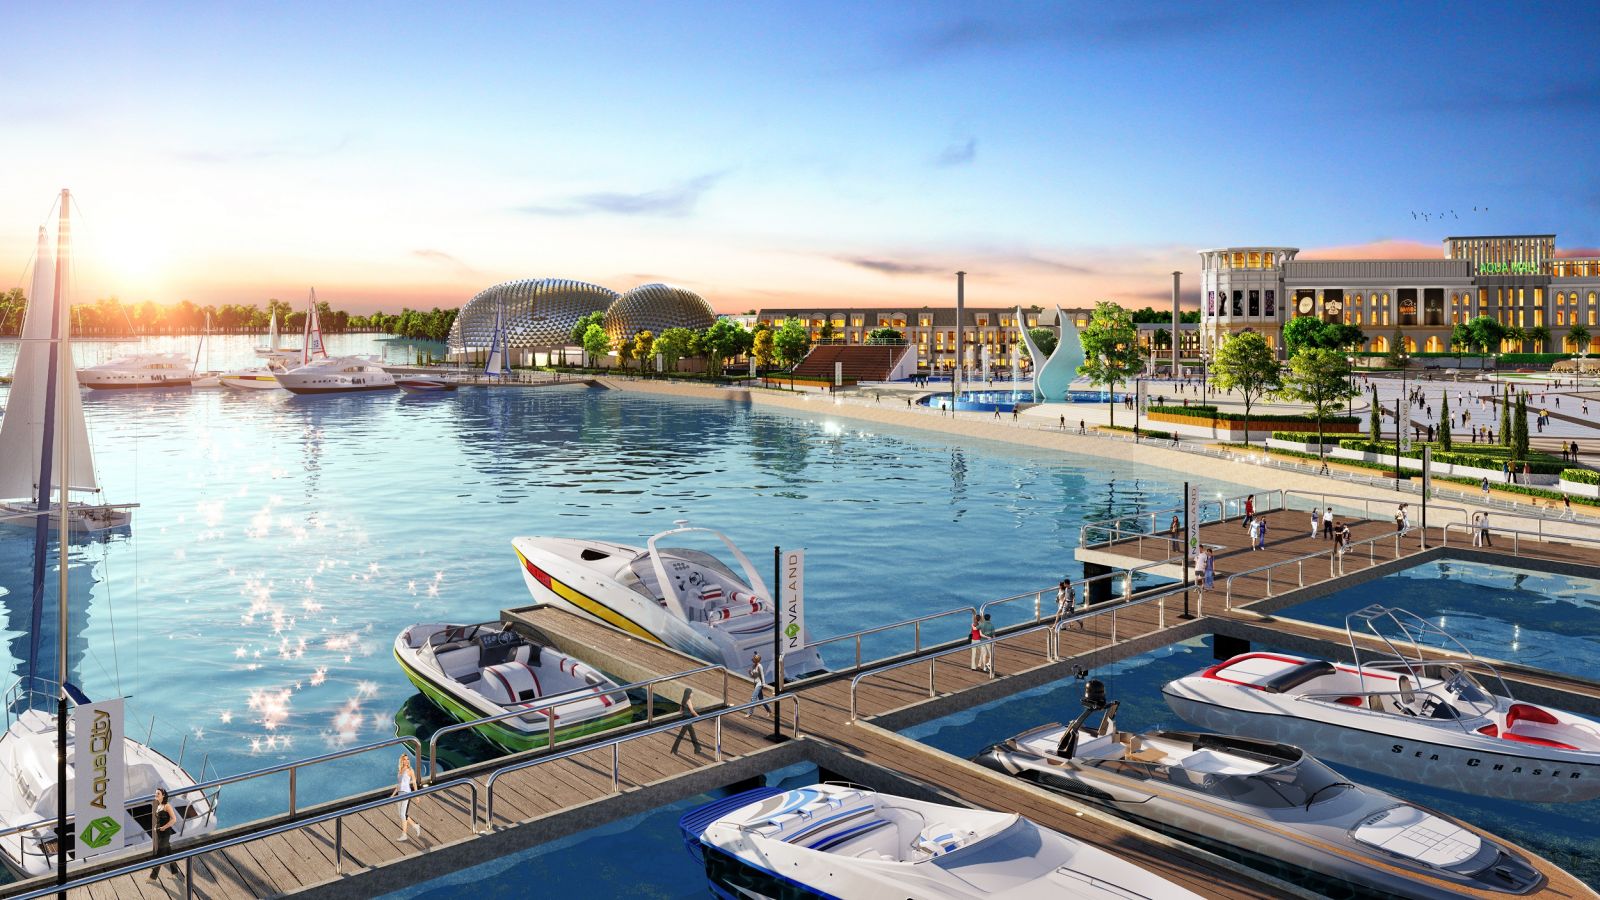 Tổ hợp Quảng trường - Bến du thuyền Aqua Marina đẳng cấp tại Aqua City sẽ là nơi khơi nguồn phong cách sống thời thượng hàng đầu khu vực phía Đông TPHCM.